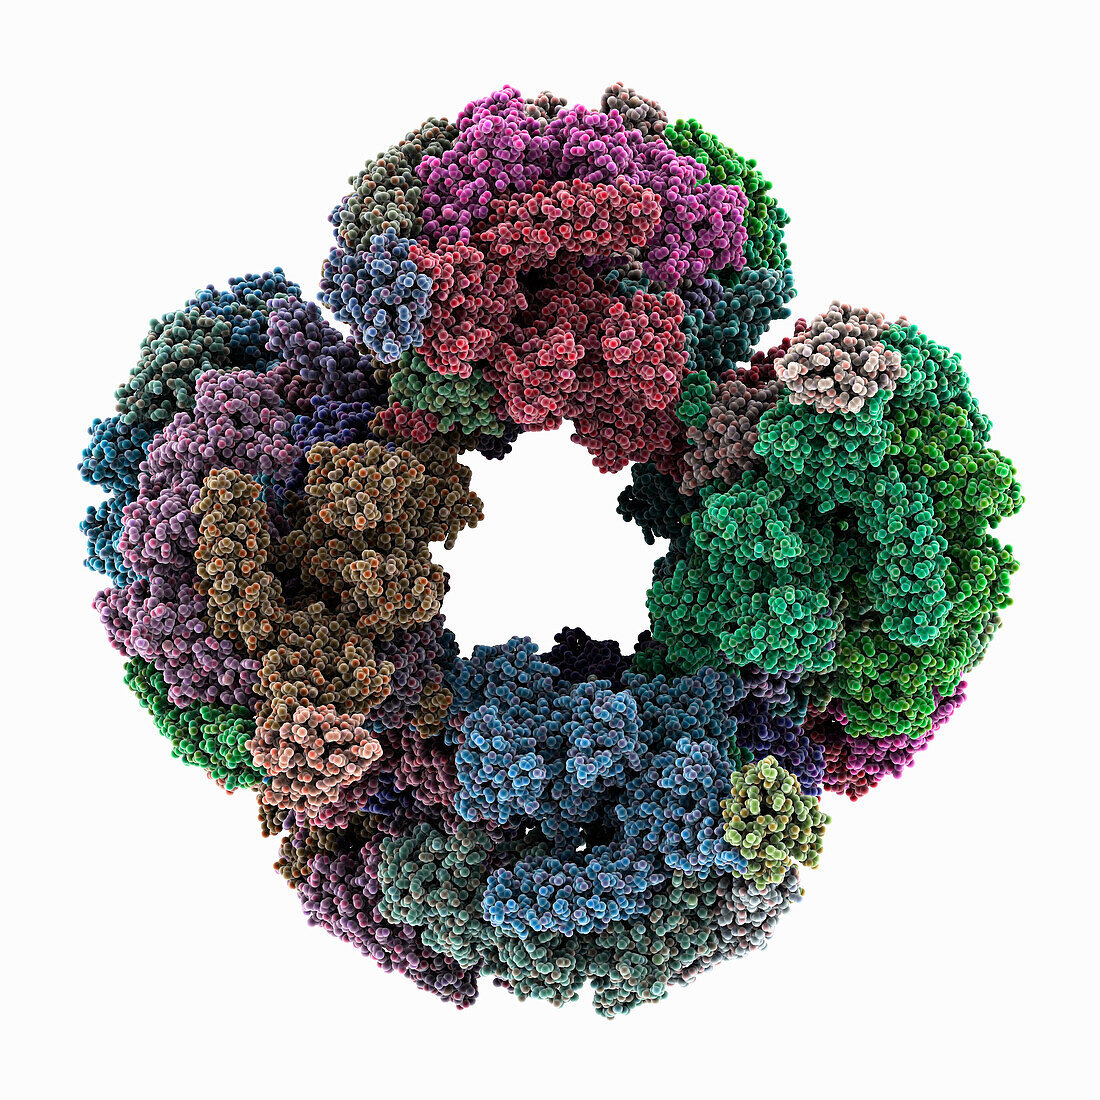 Mycobacterium tuberculosis RNA polymerase, molecular model